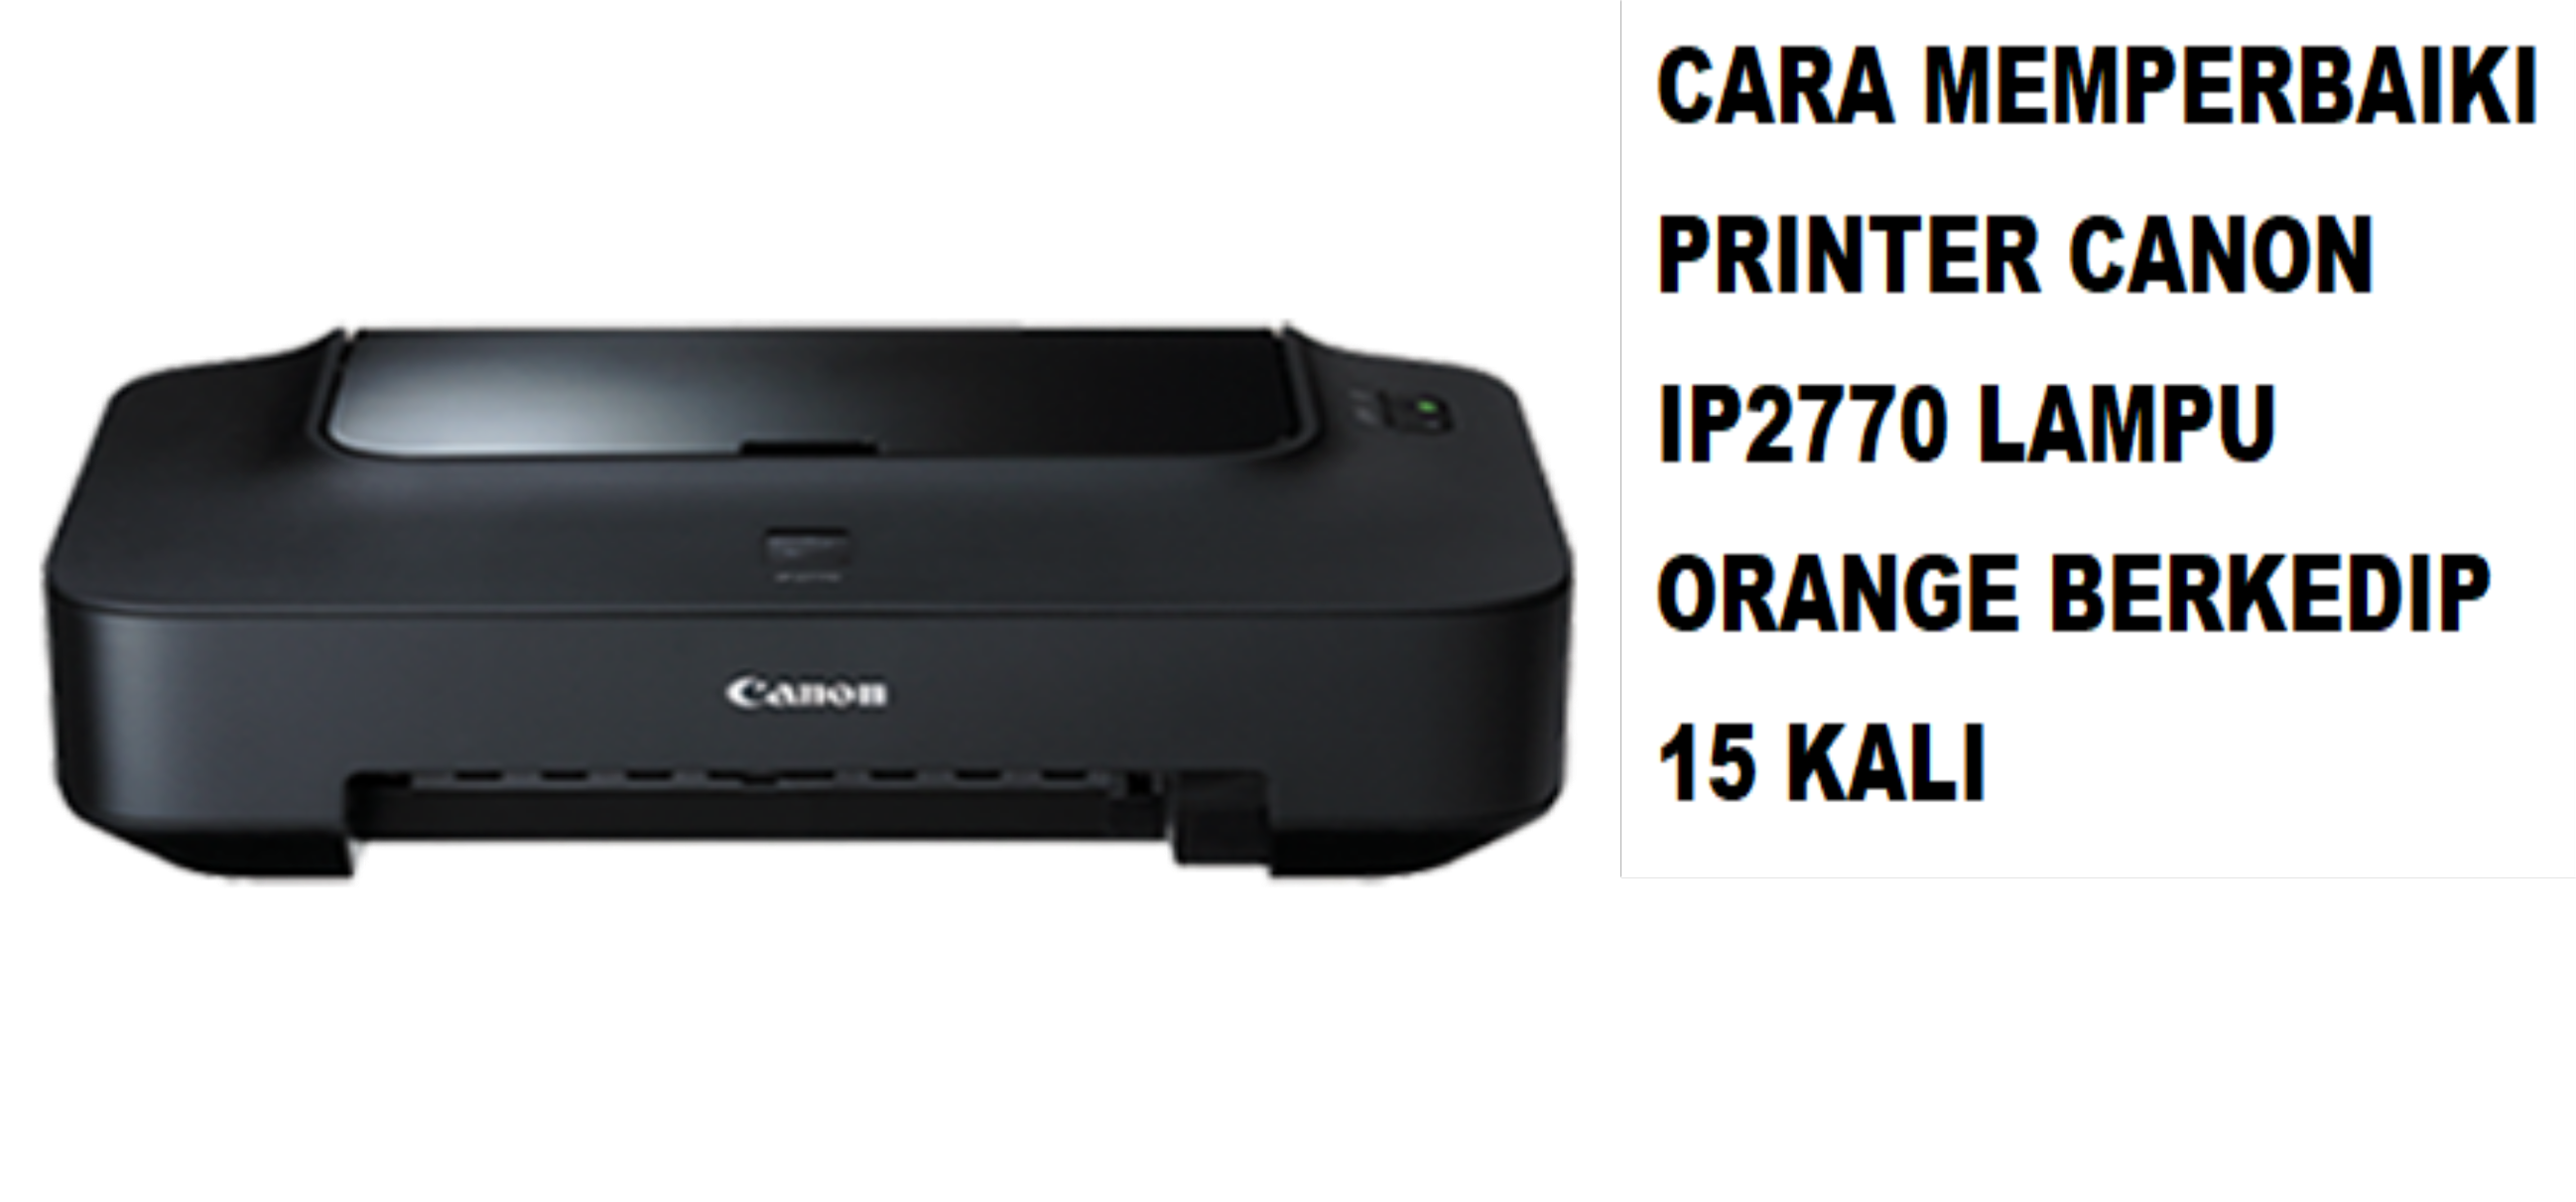 Cara Memperbaiki Printer Canon ip2770 Lampu Orange Berkedip 15 Kali